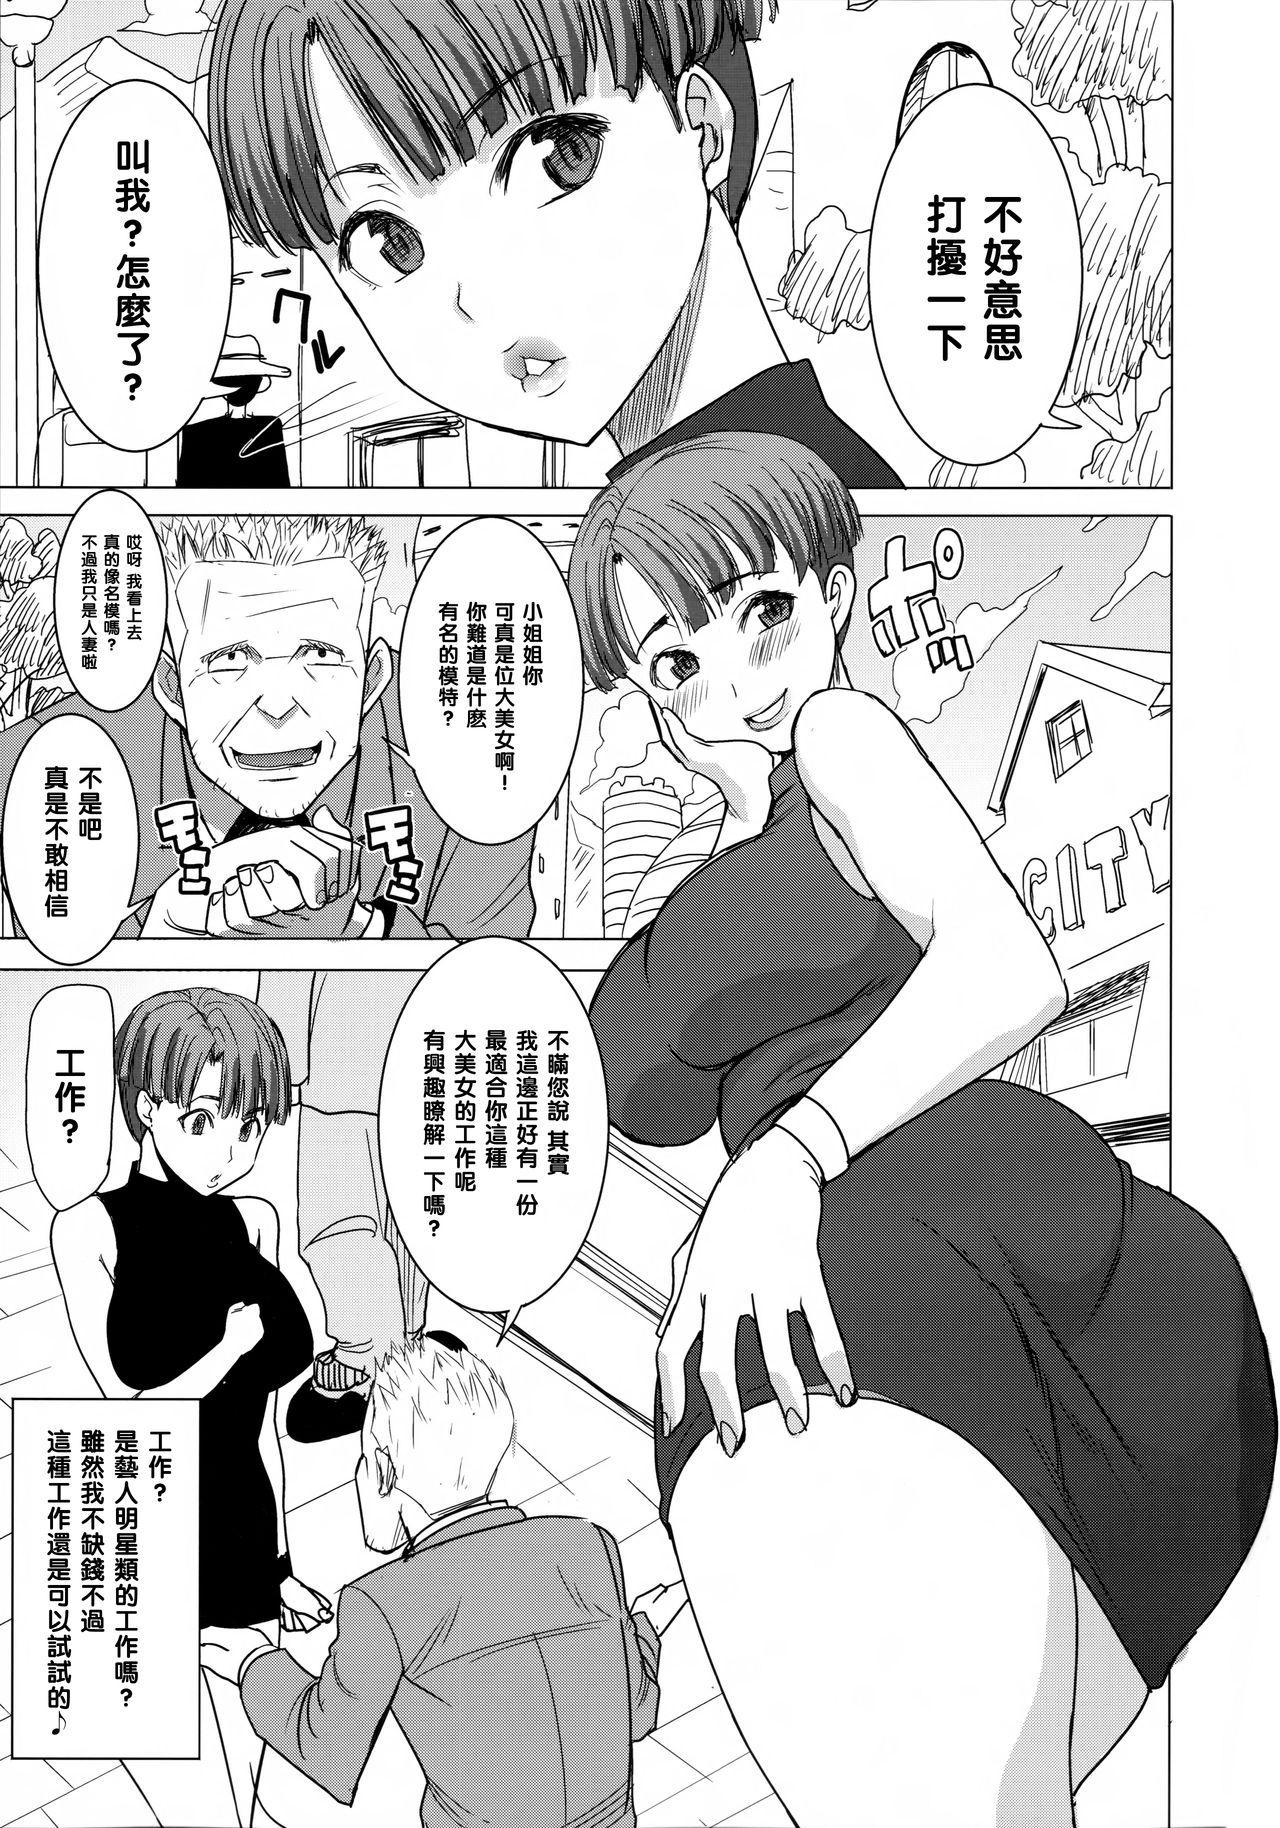 Blow Job DELIVERY NIKU BENKI - Dragon ball z Transvestite - Page 3